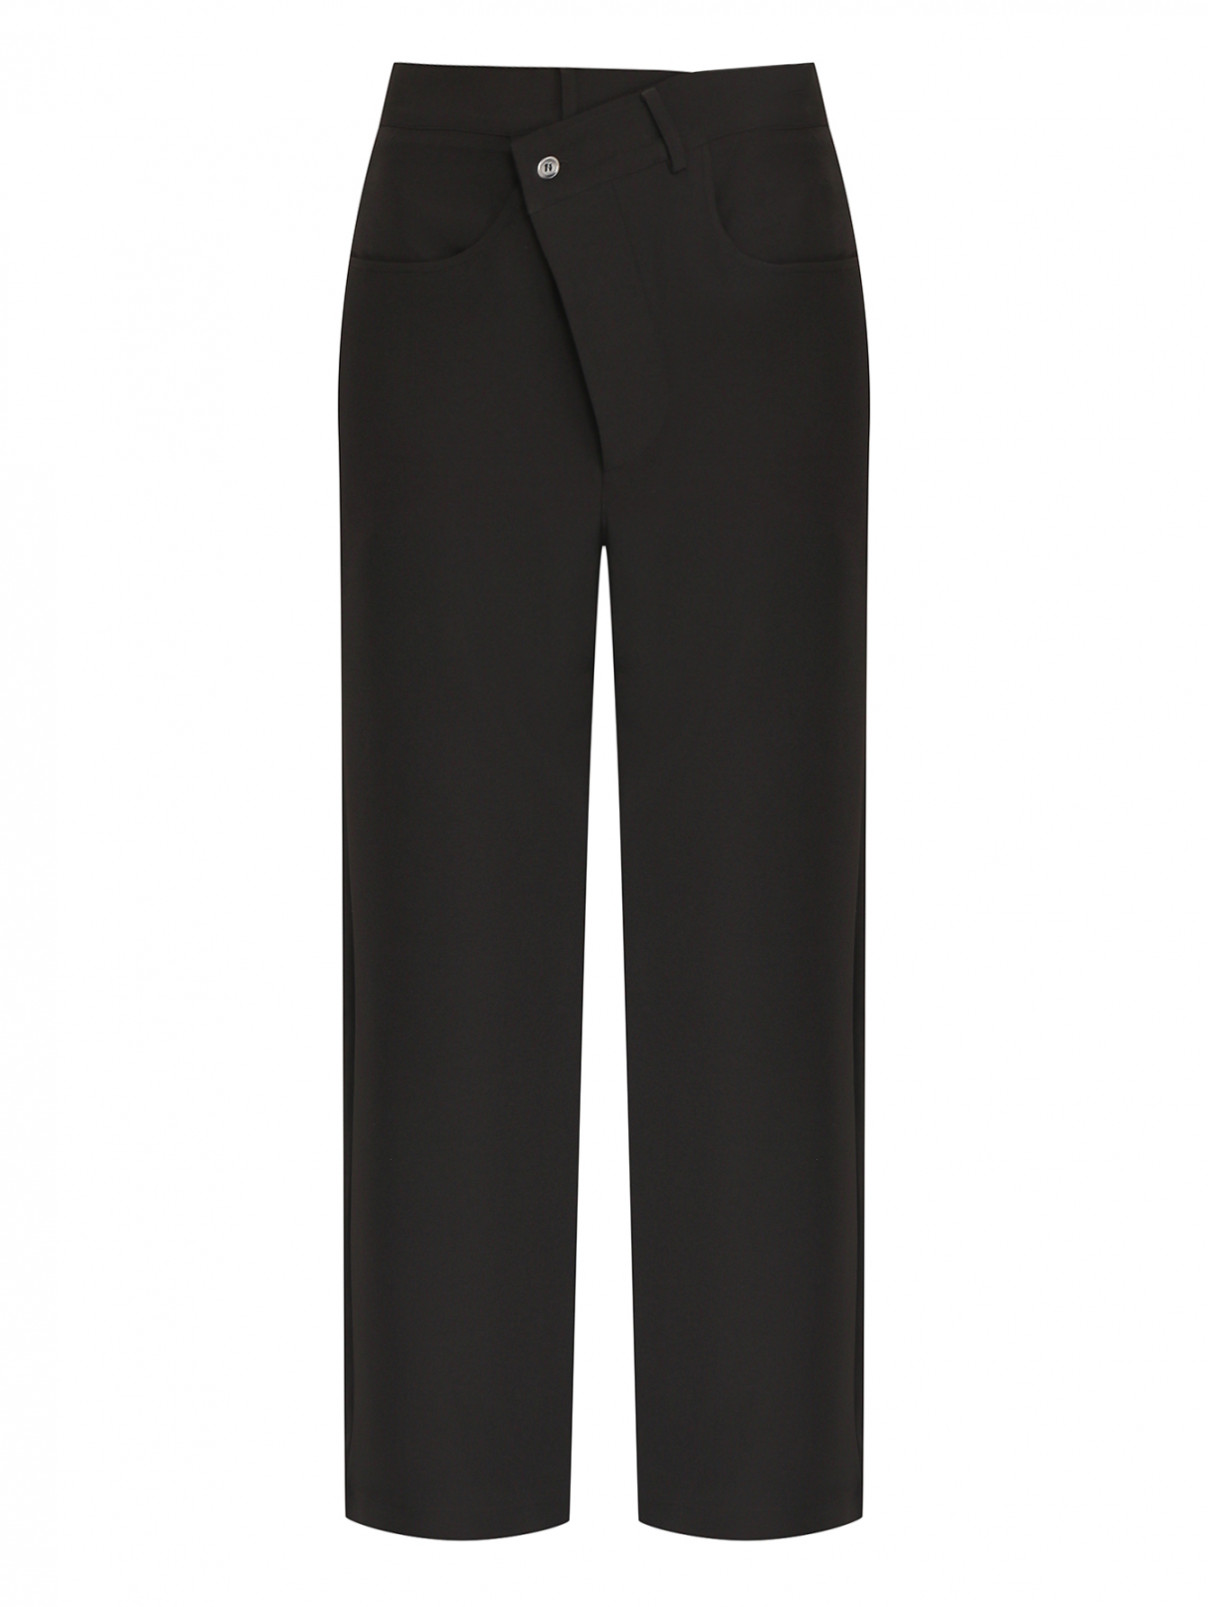 Широкие брюки с асимметричной застежкой Ombra  –  Общий вид  – Цвет:  Черный